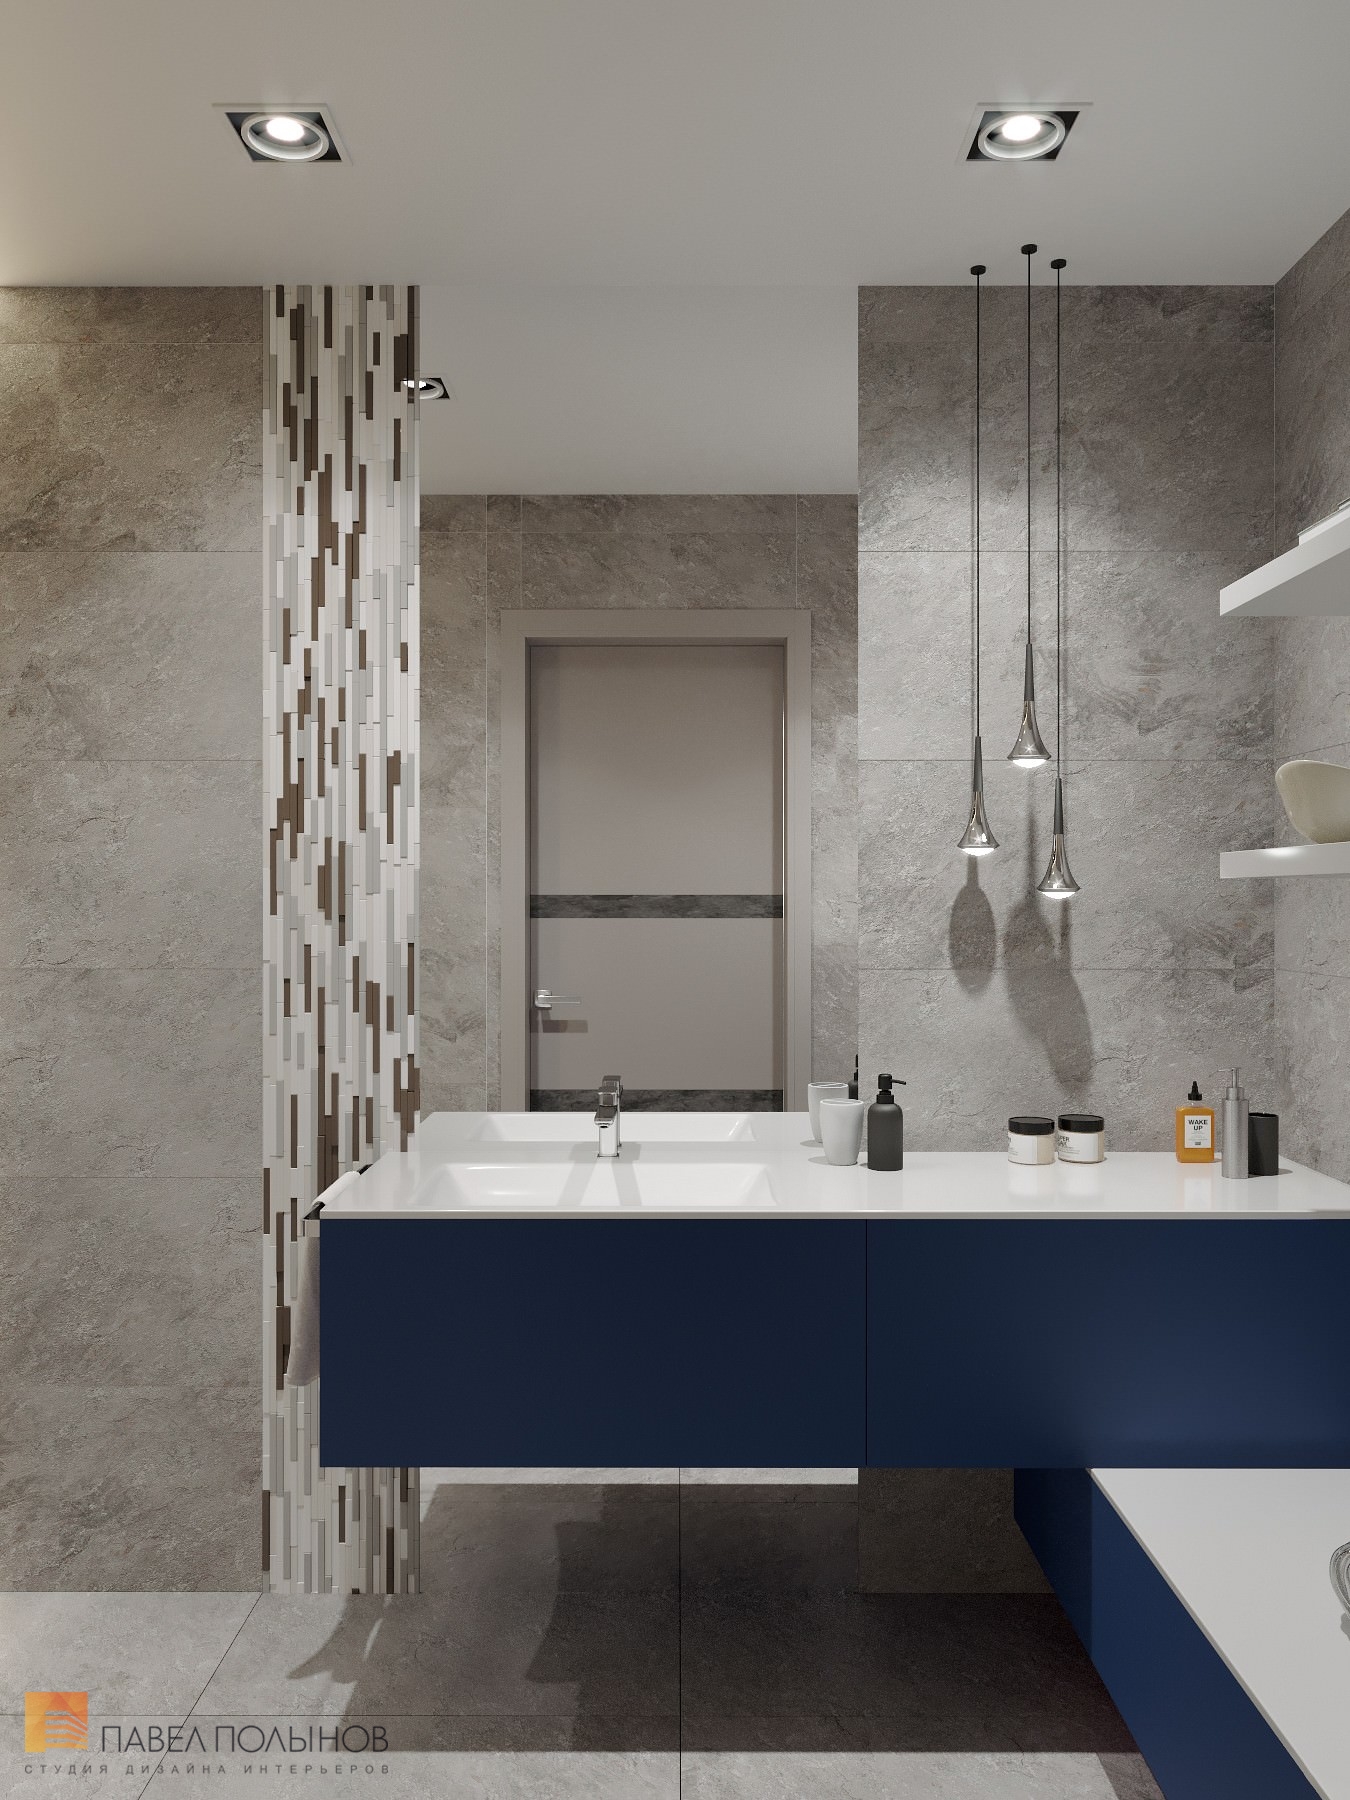 Фото дизайн ванной комнаты из проекта «Дизайн интерьер квартиры в ЖК «Кремлевские звезды», современный стиль, 133 кв.м.»